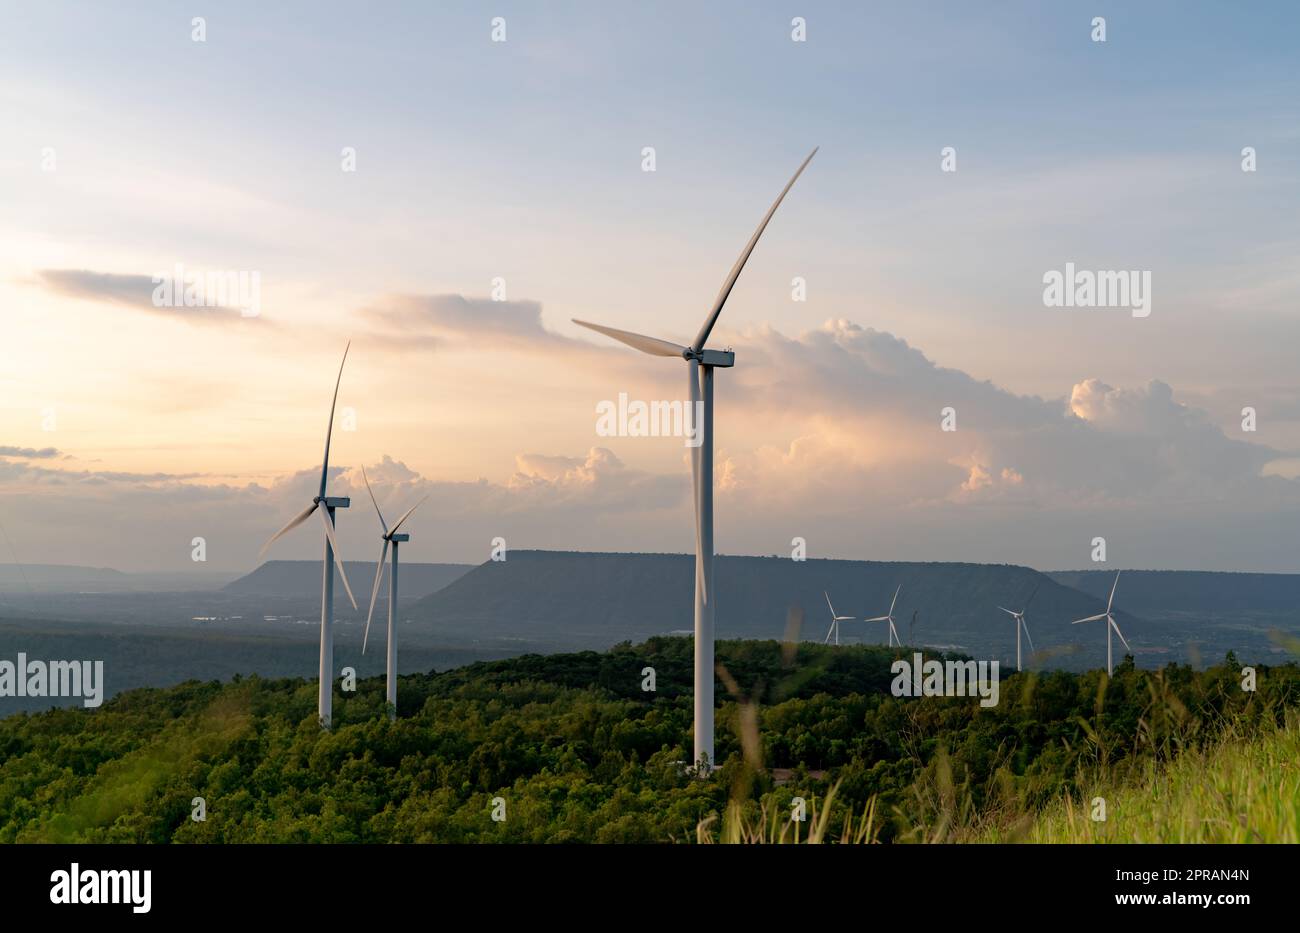 Windenergie. Windkraft. Nachhaltige, erneuerbare Energien. Windturbinen erzeugen Strom. Windmühlen-Farm auf dem Berg mit Sonnenuntergang am Himmel. Umweltfreundliche Technologie. Erneuerbare Ressource. Nachhaltige Entwicklung. Stockfoto